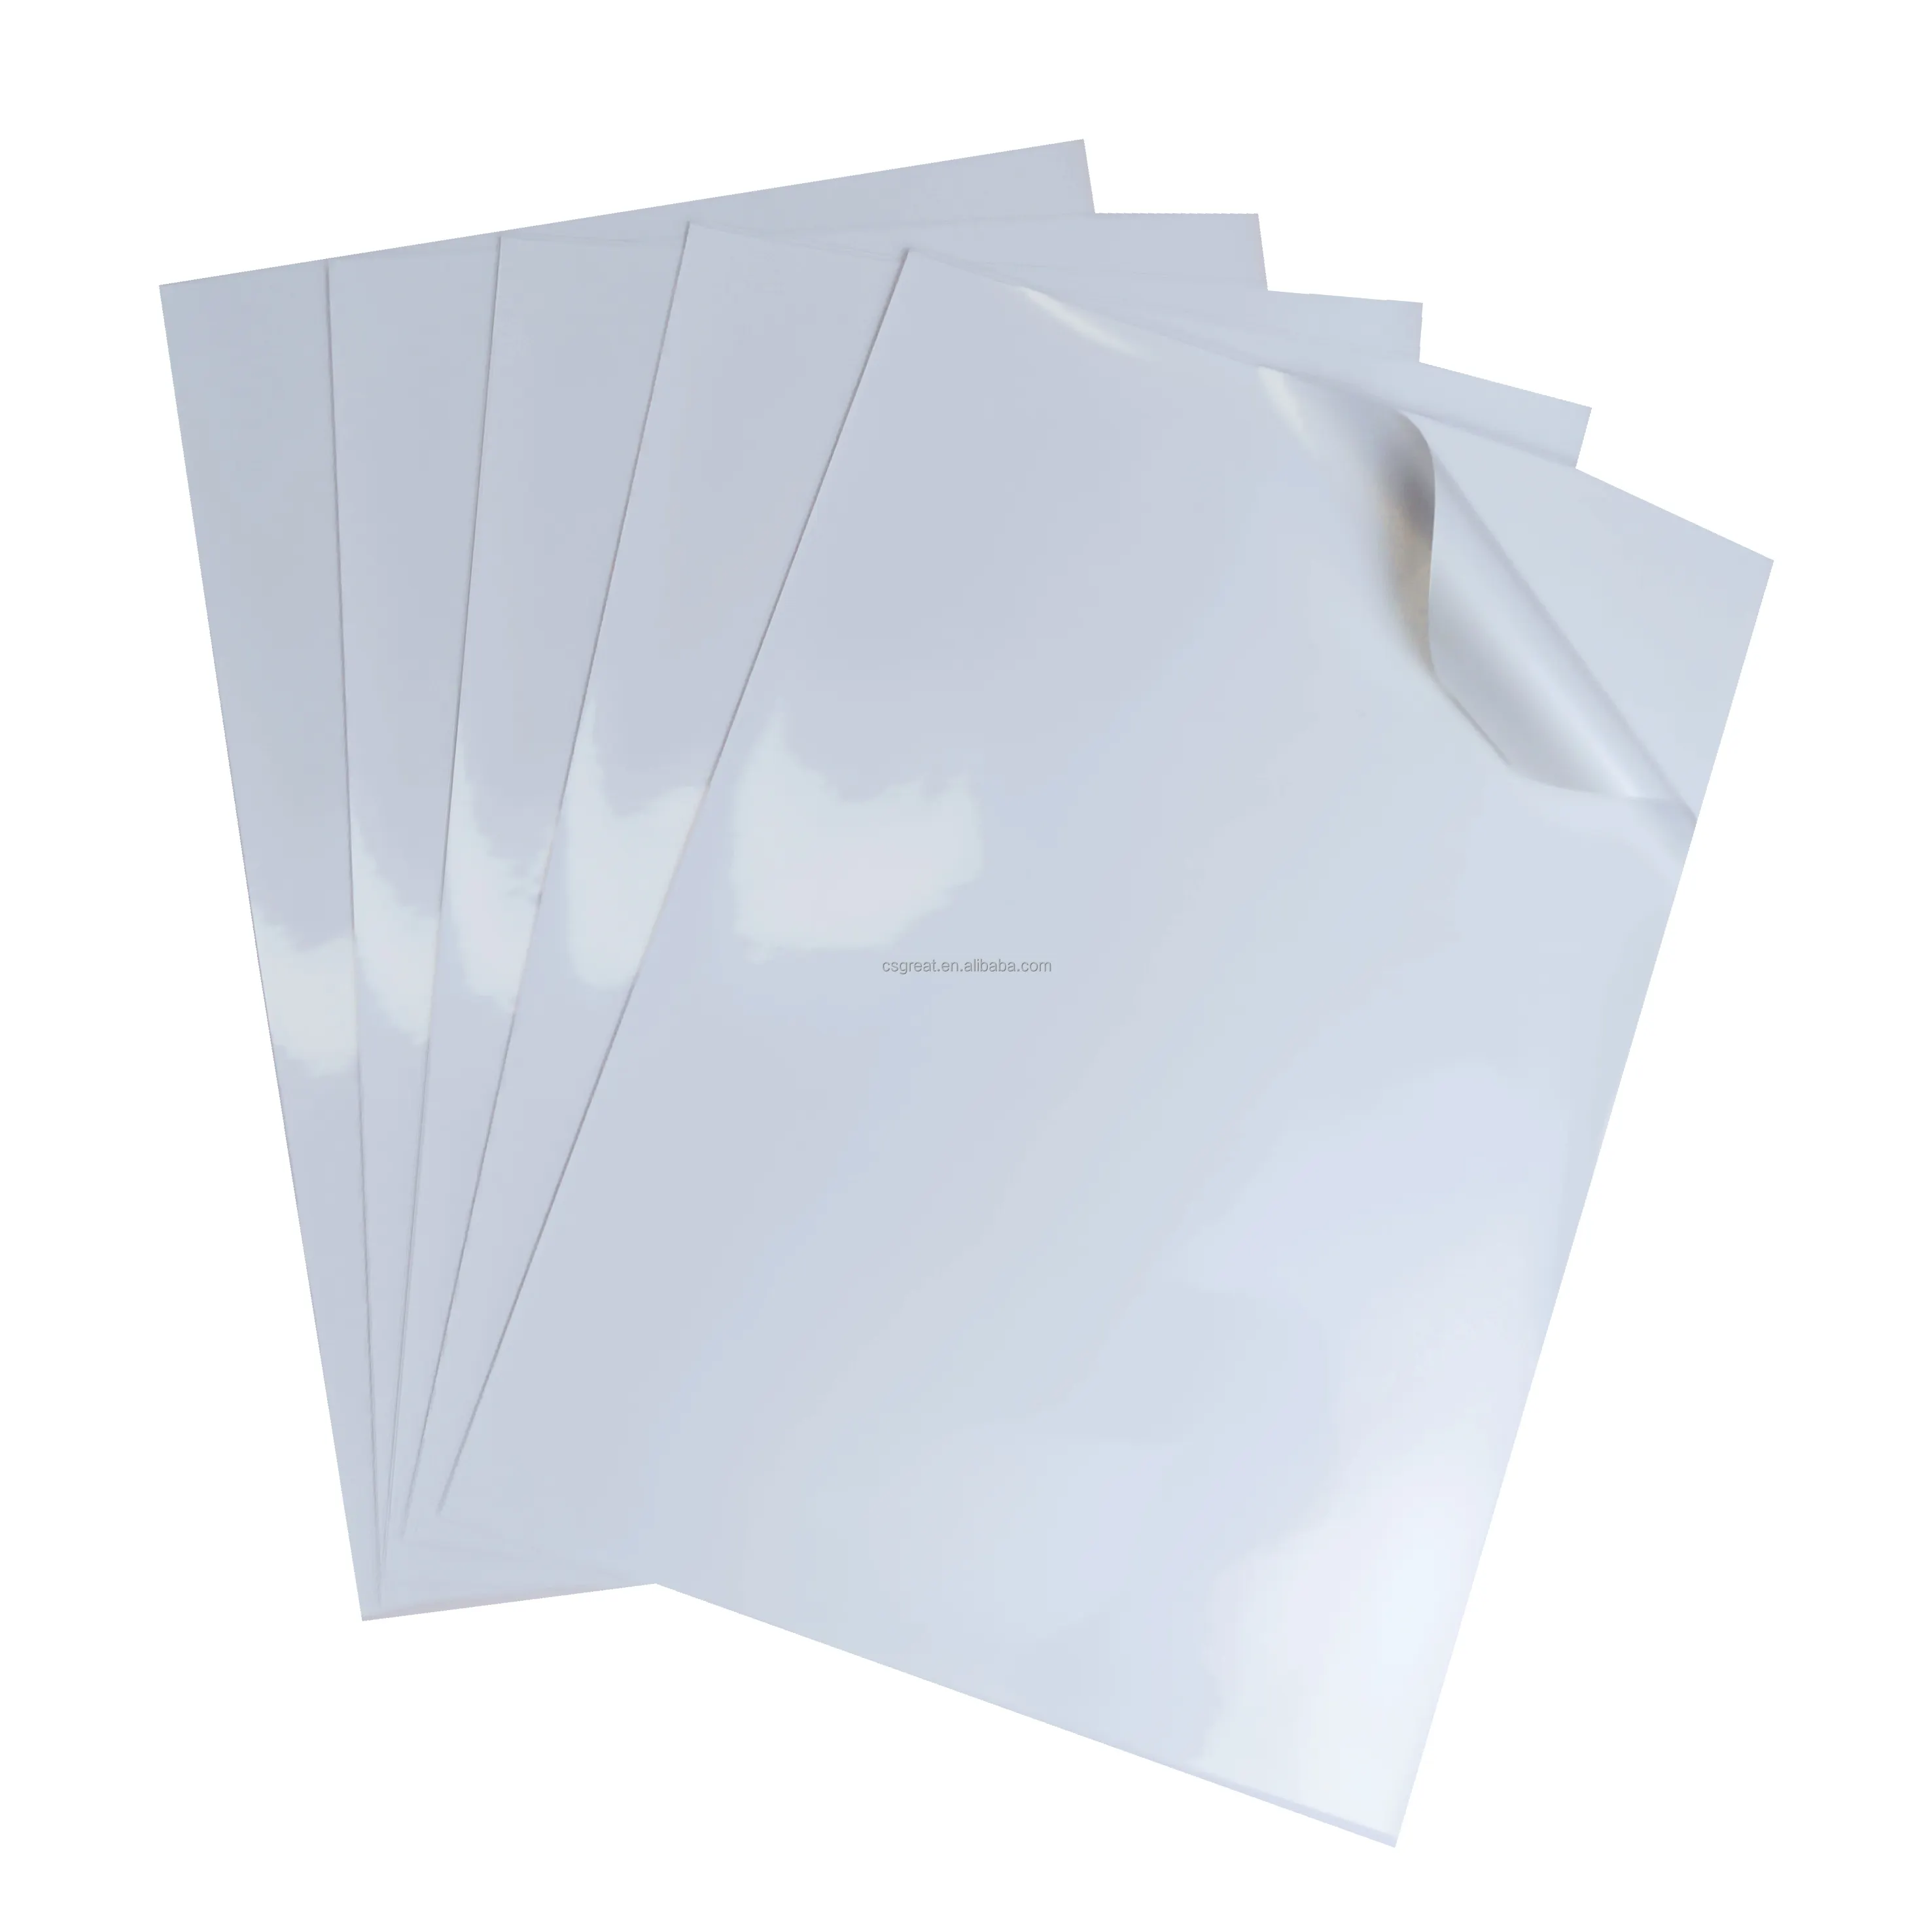 Eccellente olografico personalizzato appiccicoso vinile argento retro-adesivo 100 micron adesivo di carta per l'alta qualità stampa digitale